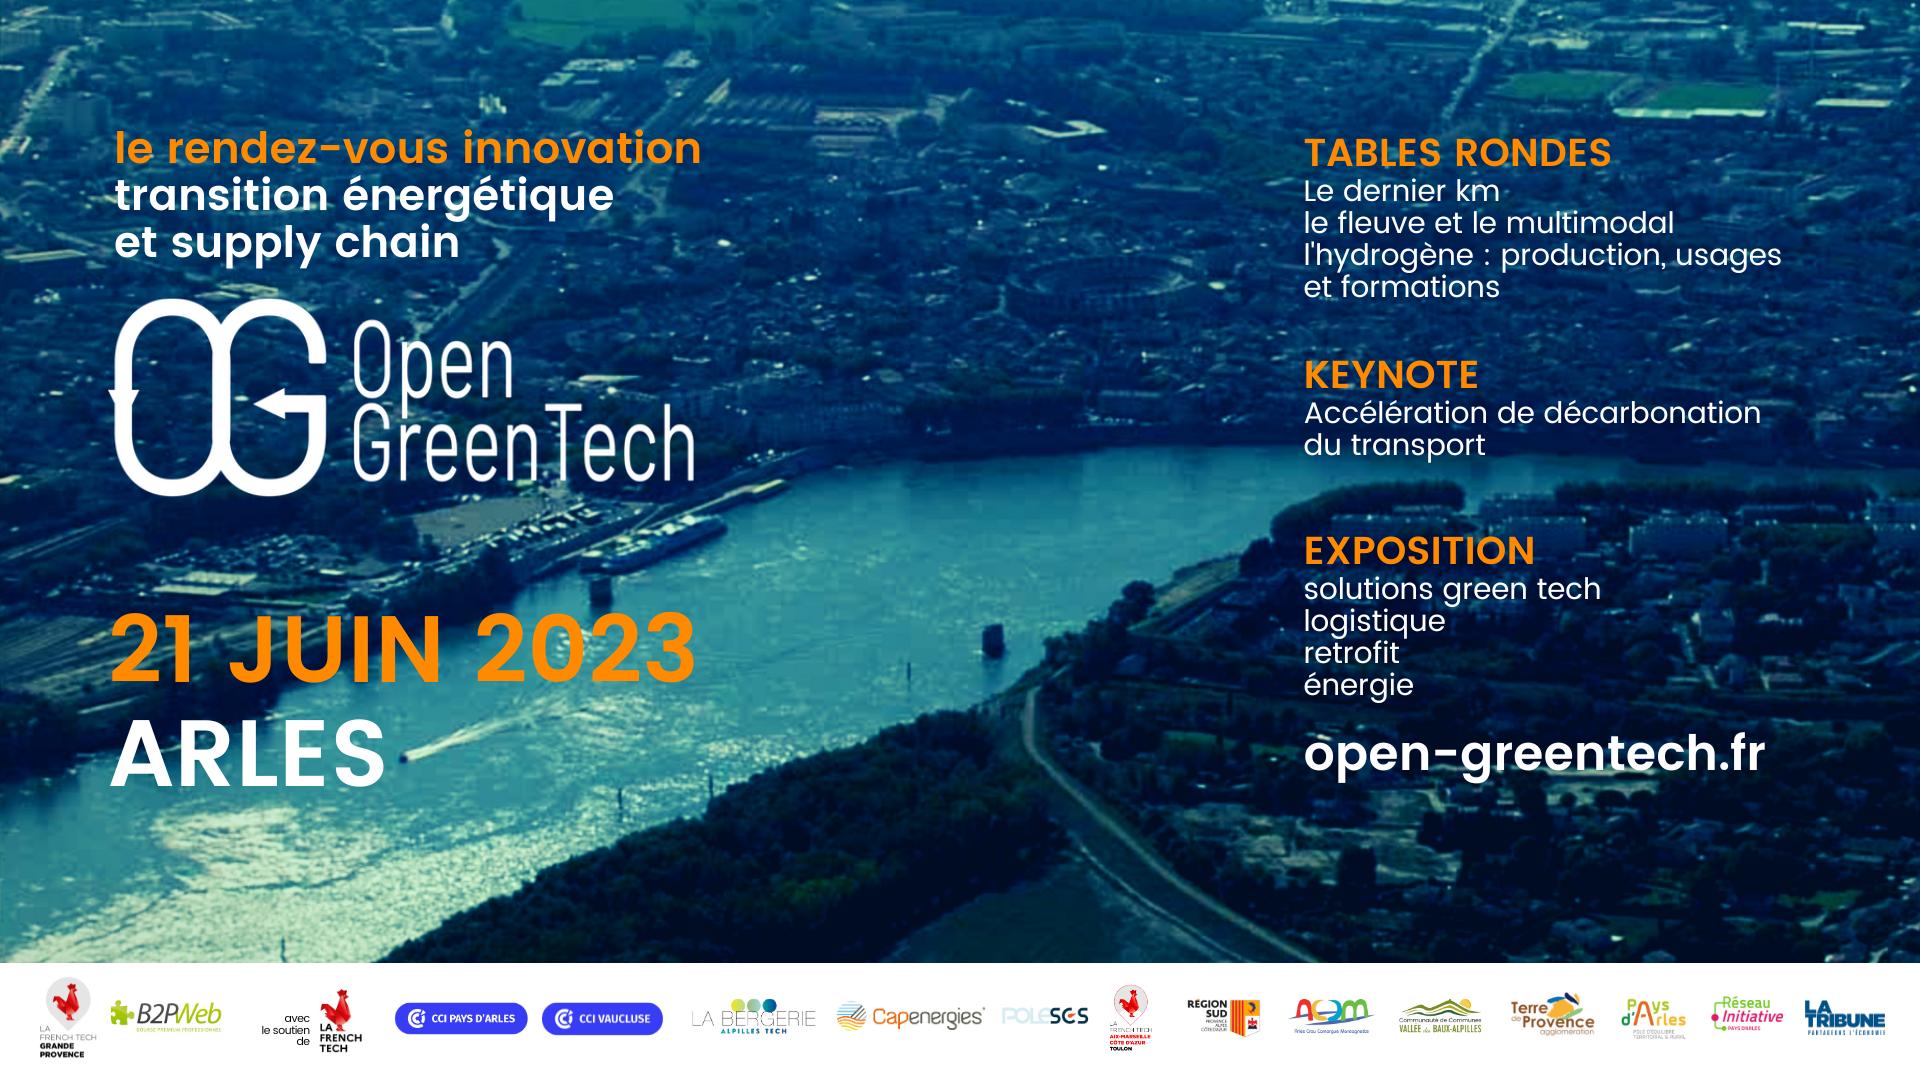 Open GreenTech